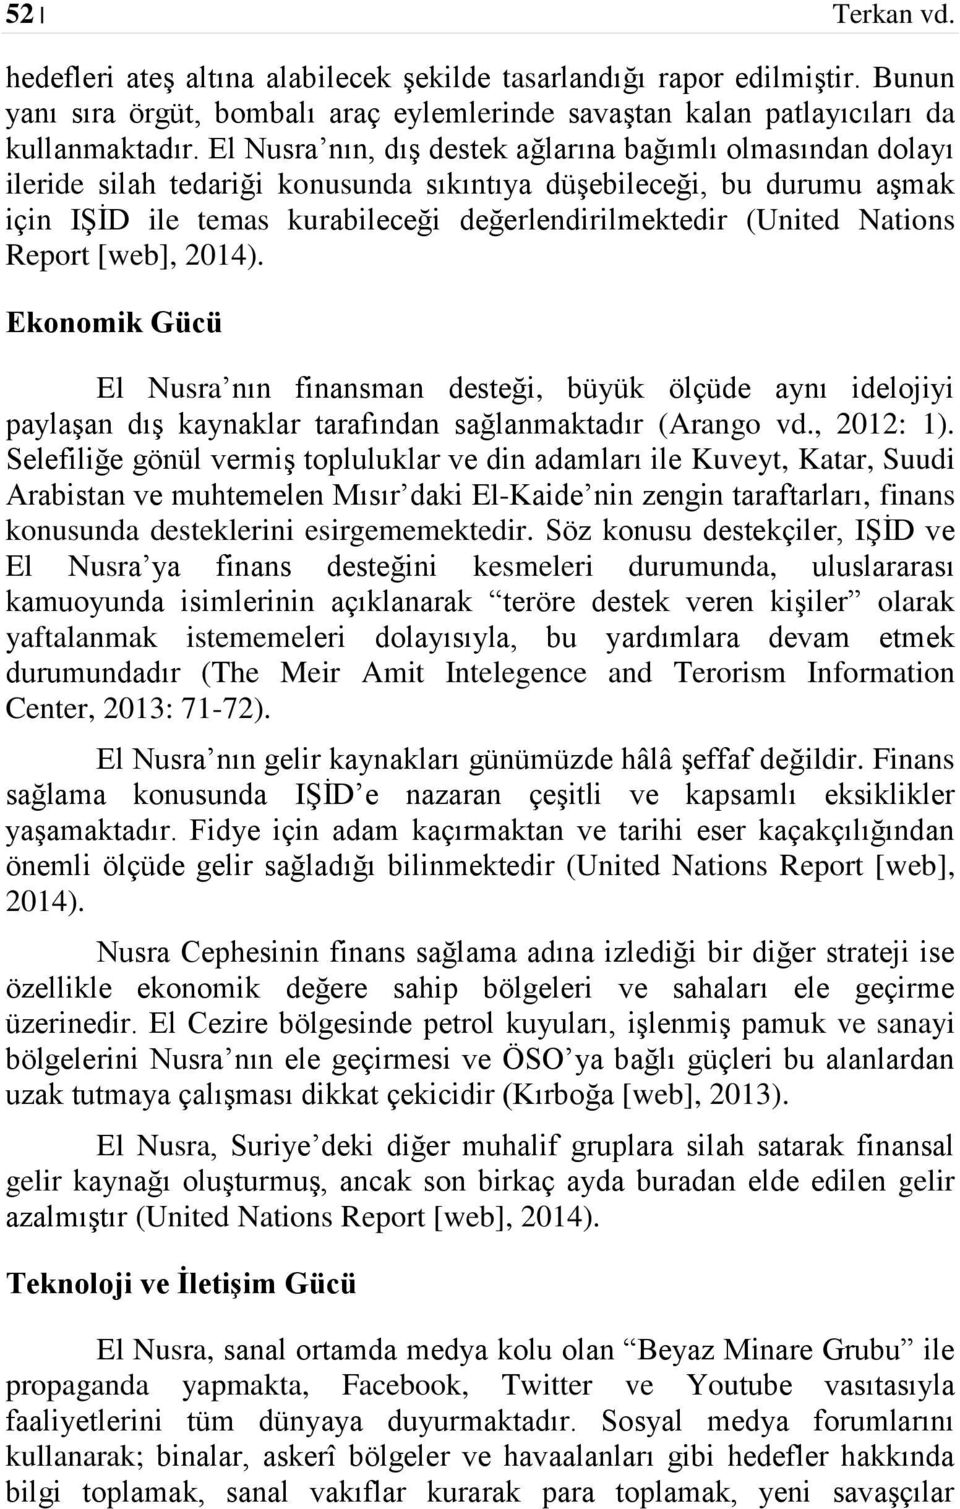 Nations Report [web], 2014). Ekonomik Gücü El Nusra nın finansman desteği, büyük ölçüde aynı idelojiyi paylaşan dış kaynaklar tarafından sağlanmaktadır (Arango vd., 2012: 1).